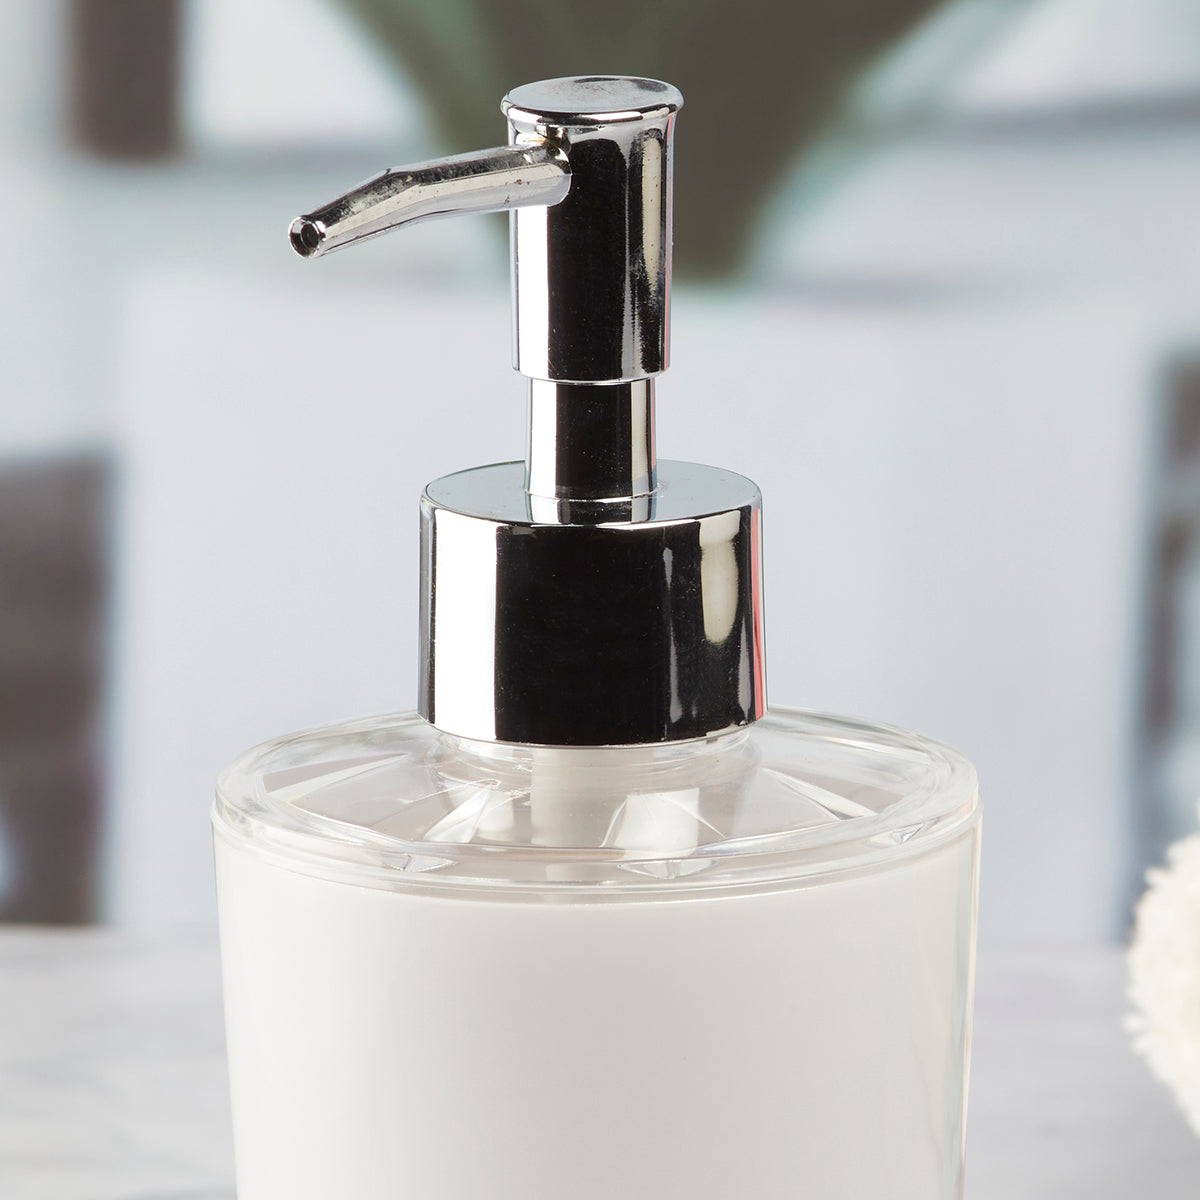 Acrylic Soap Dispenser Pump for Bathroom for Bath Gel, Lotion, Shampoo(8457)